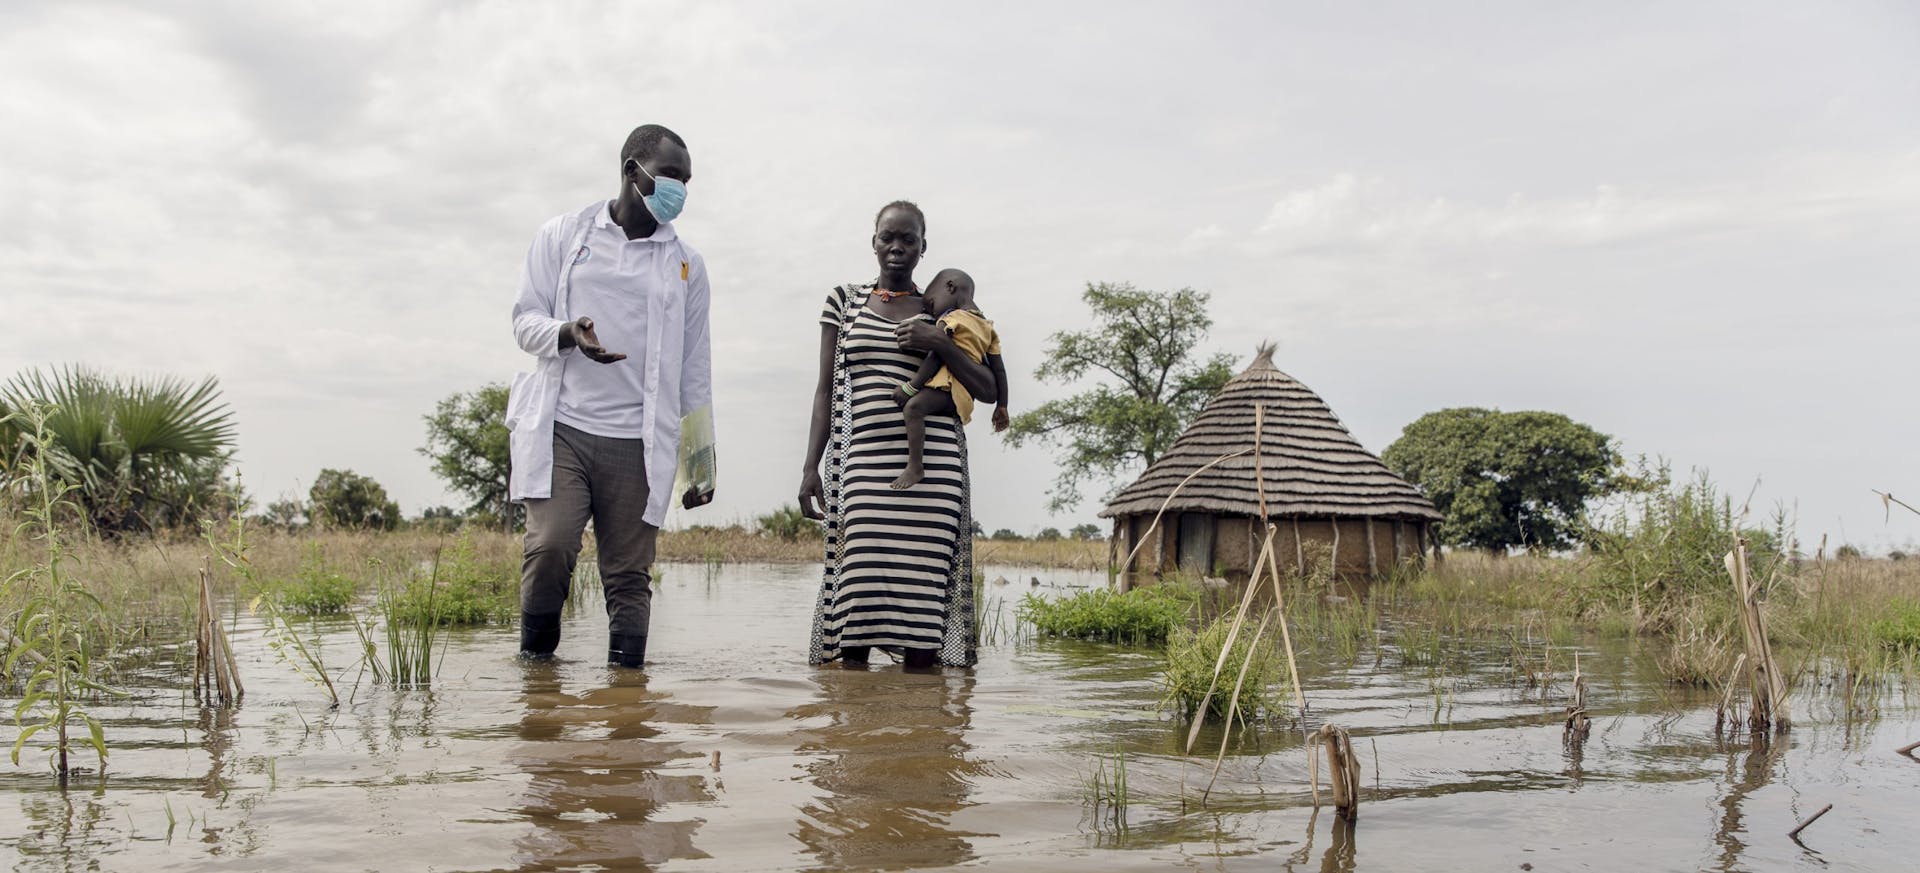 James van IRC en Abuk houden Nyirou vast in de overstromingen rond Abuk's Tukul, in het noorden van Bahr El Ghazal, Zuid-Soedan, zaterdag 16 oktober 2021.